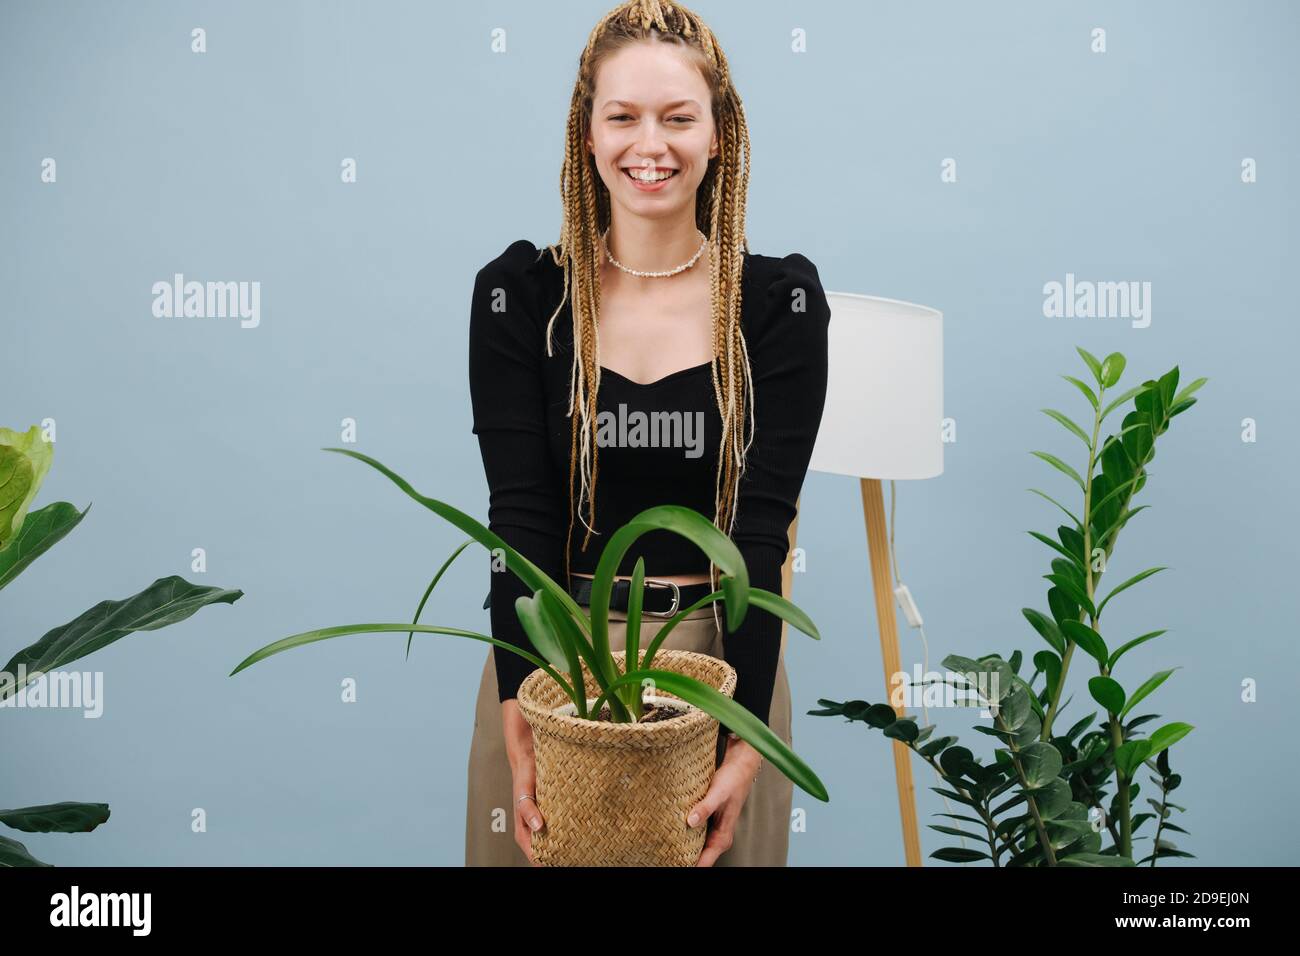 Femme insouciante avec des tresses afro blondes élégantes posant avec des pots plante entre les mains Banque D'Images